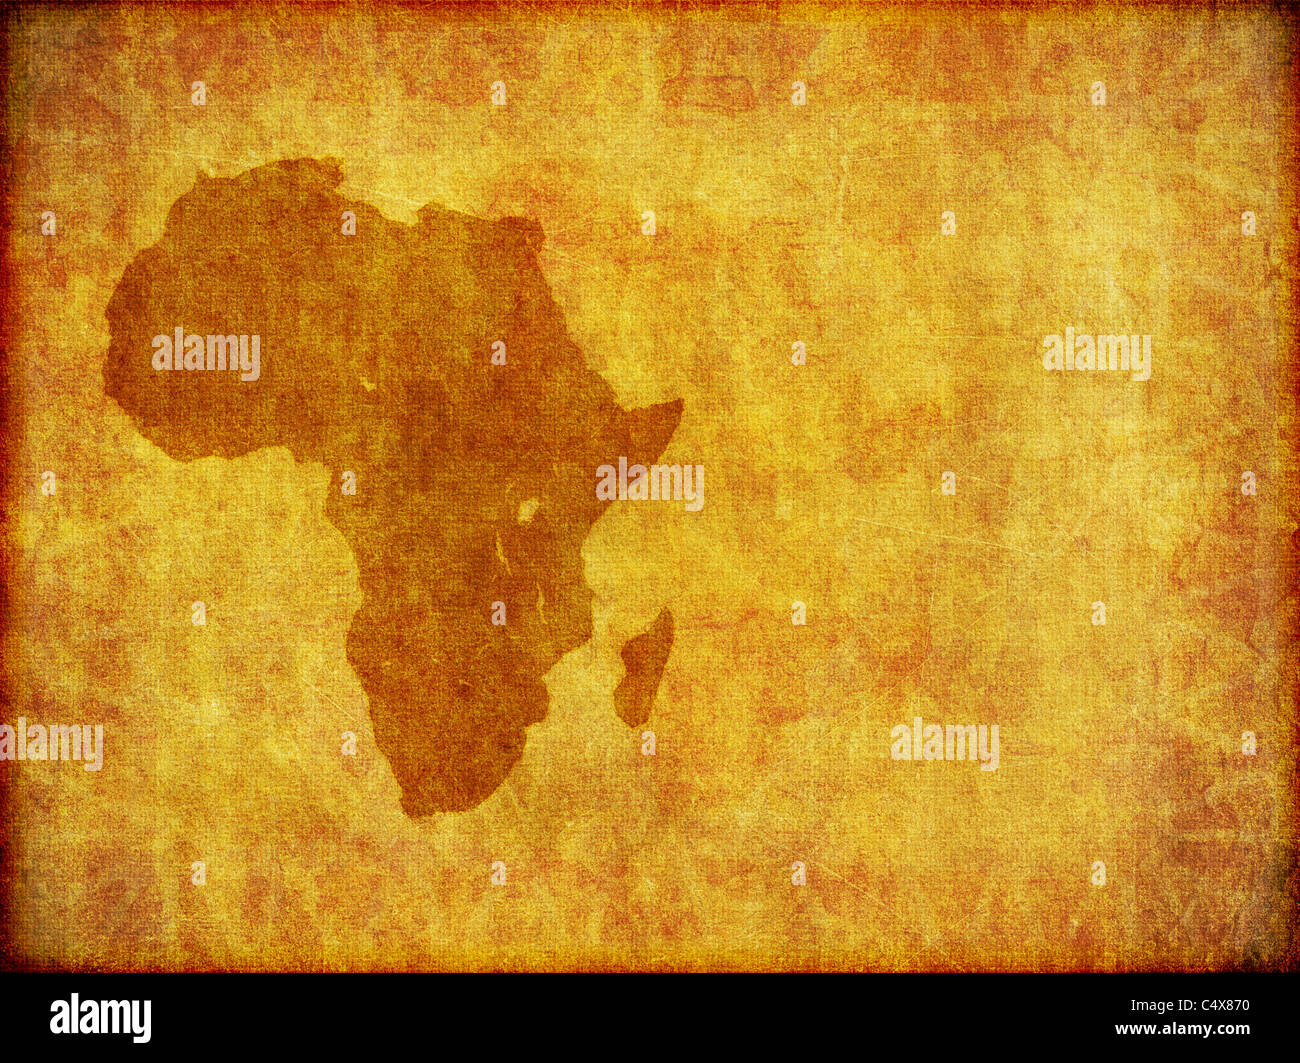 Un diseño de fondo del continente africano impreso en un pedazo de material envejecido.Con un montón de espacio de copia. Foto de stock